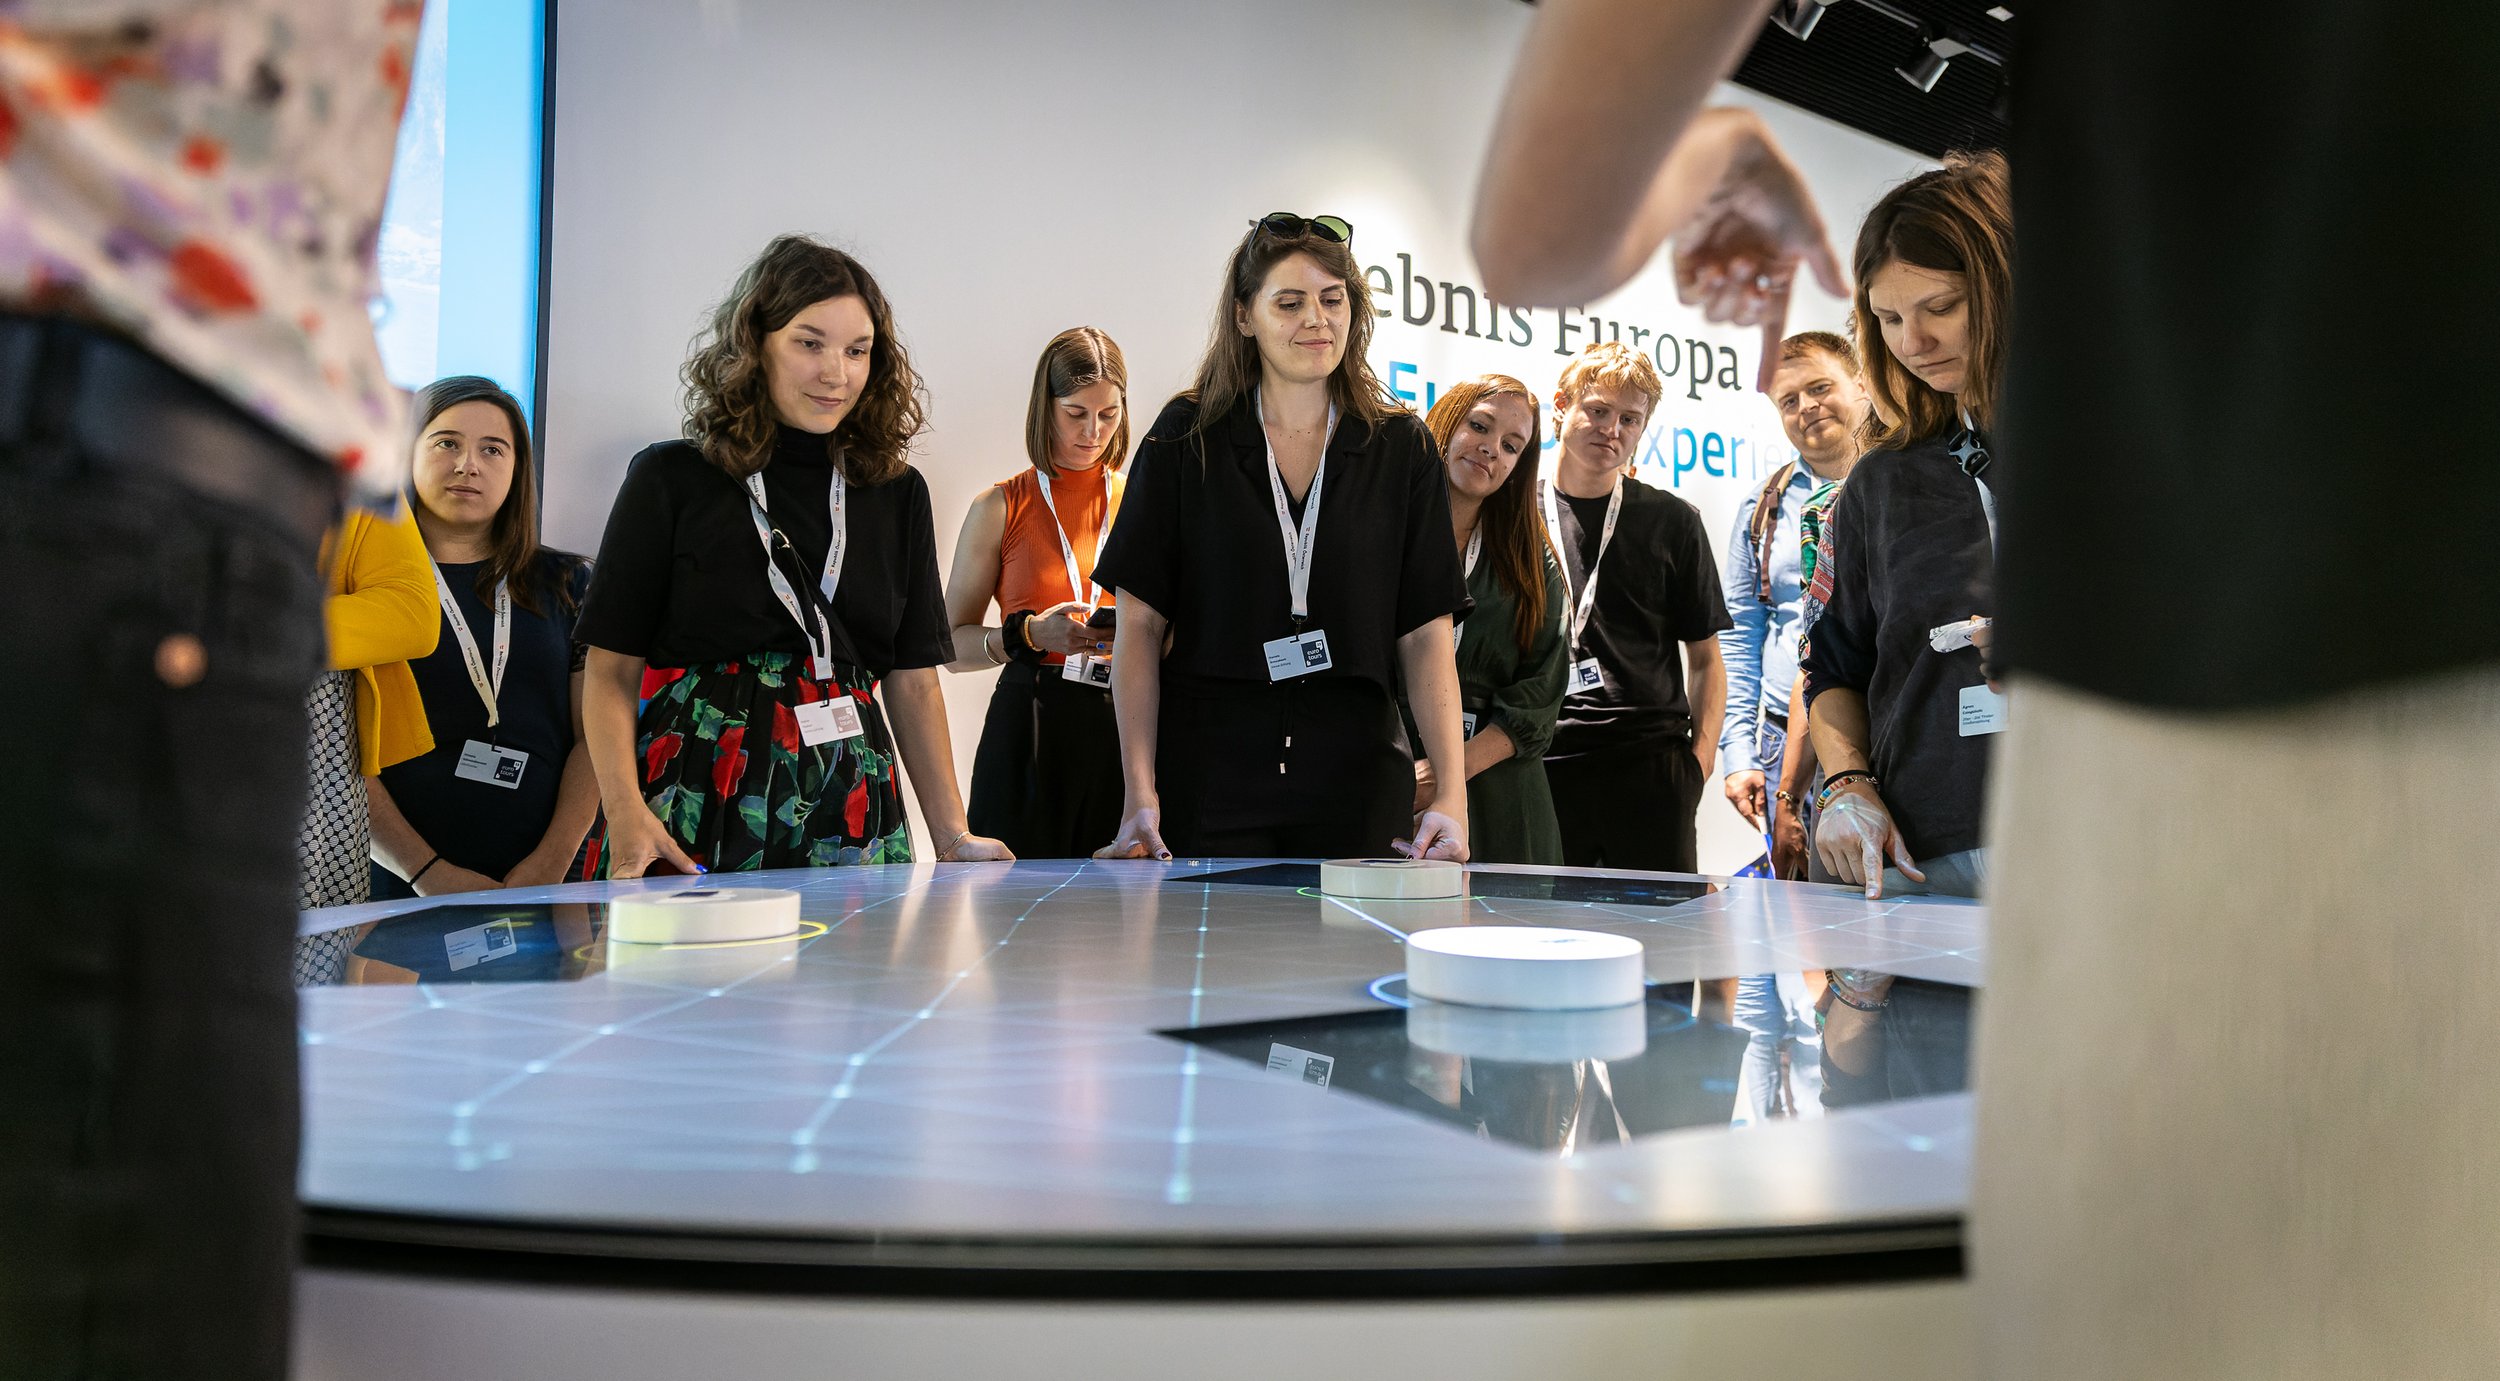  Katrin Fischer und Daniela Brescakovic bei den interaktiven Stationen im “Erlebnis Europa” 